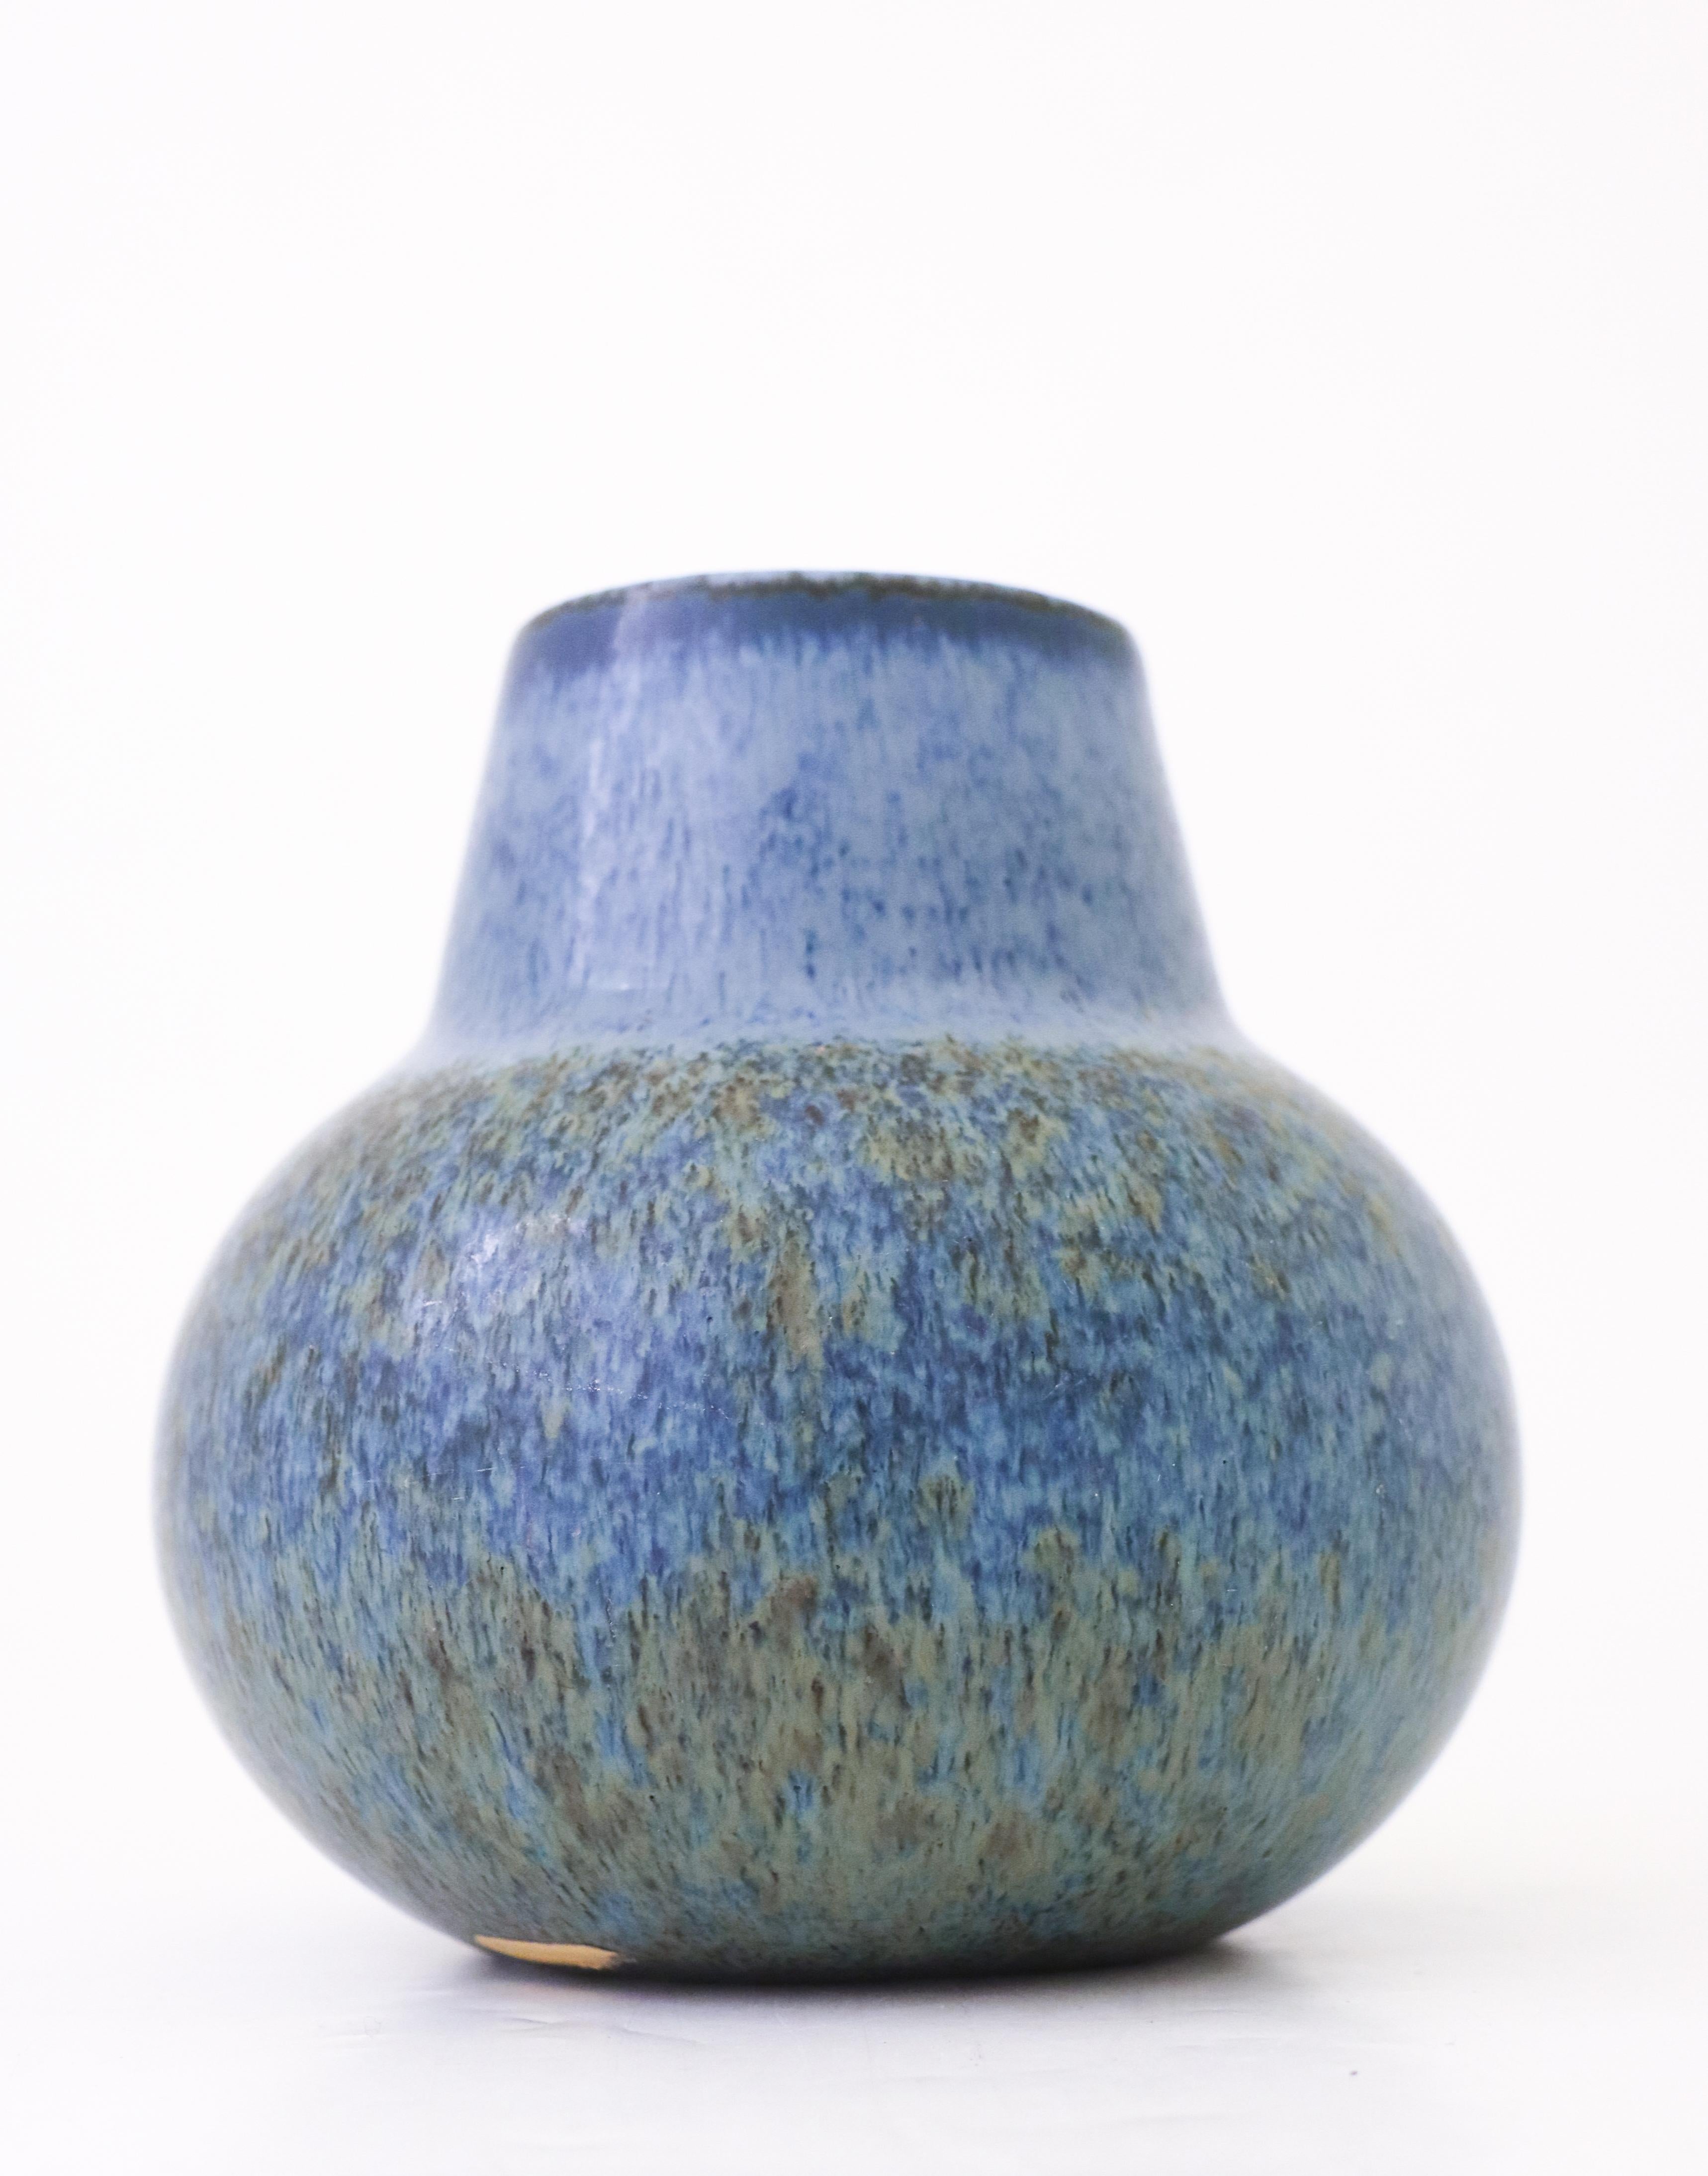 Eine Keramikvase mit einer schönen Glasur, entworfen von Carl-Harry Stålhane bei Rörstrand. Die Vase ist 15 cm hoch und hat einen Durchmesser von 15 cm. Sie ist in sehr gutem Zustand, abgesehen von einigen kleinen Kratzern in der Glasur. Die Vase